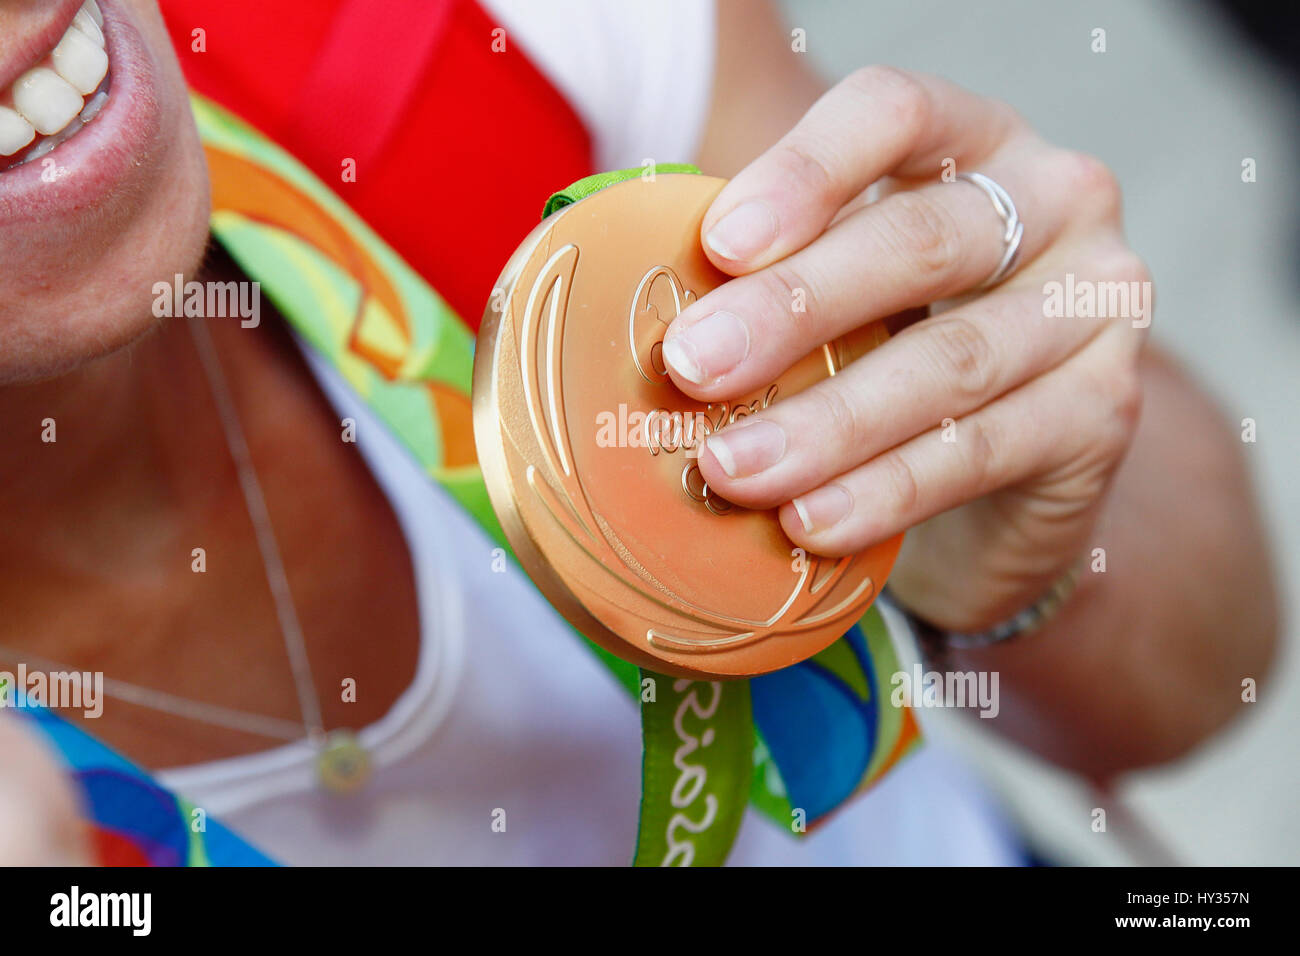 Sport, Olimpiadi, atleta tenendo la medaglia d'oro da Rio giochi 2016. Foto Stock